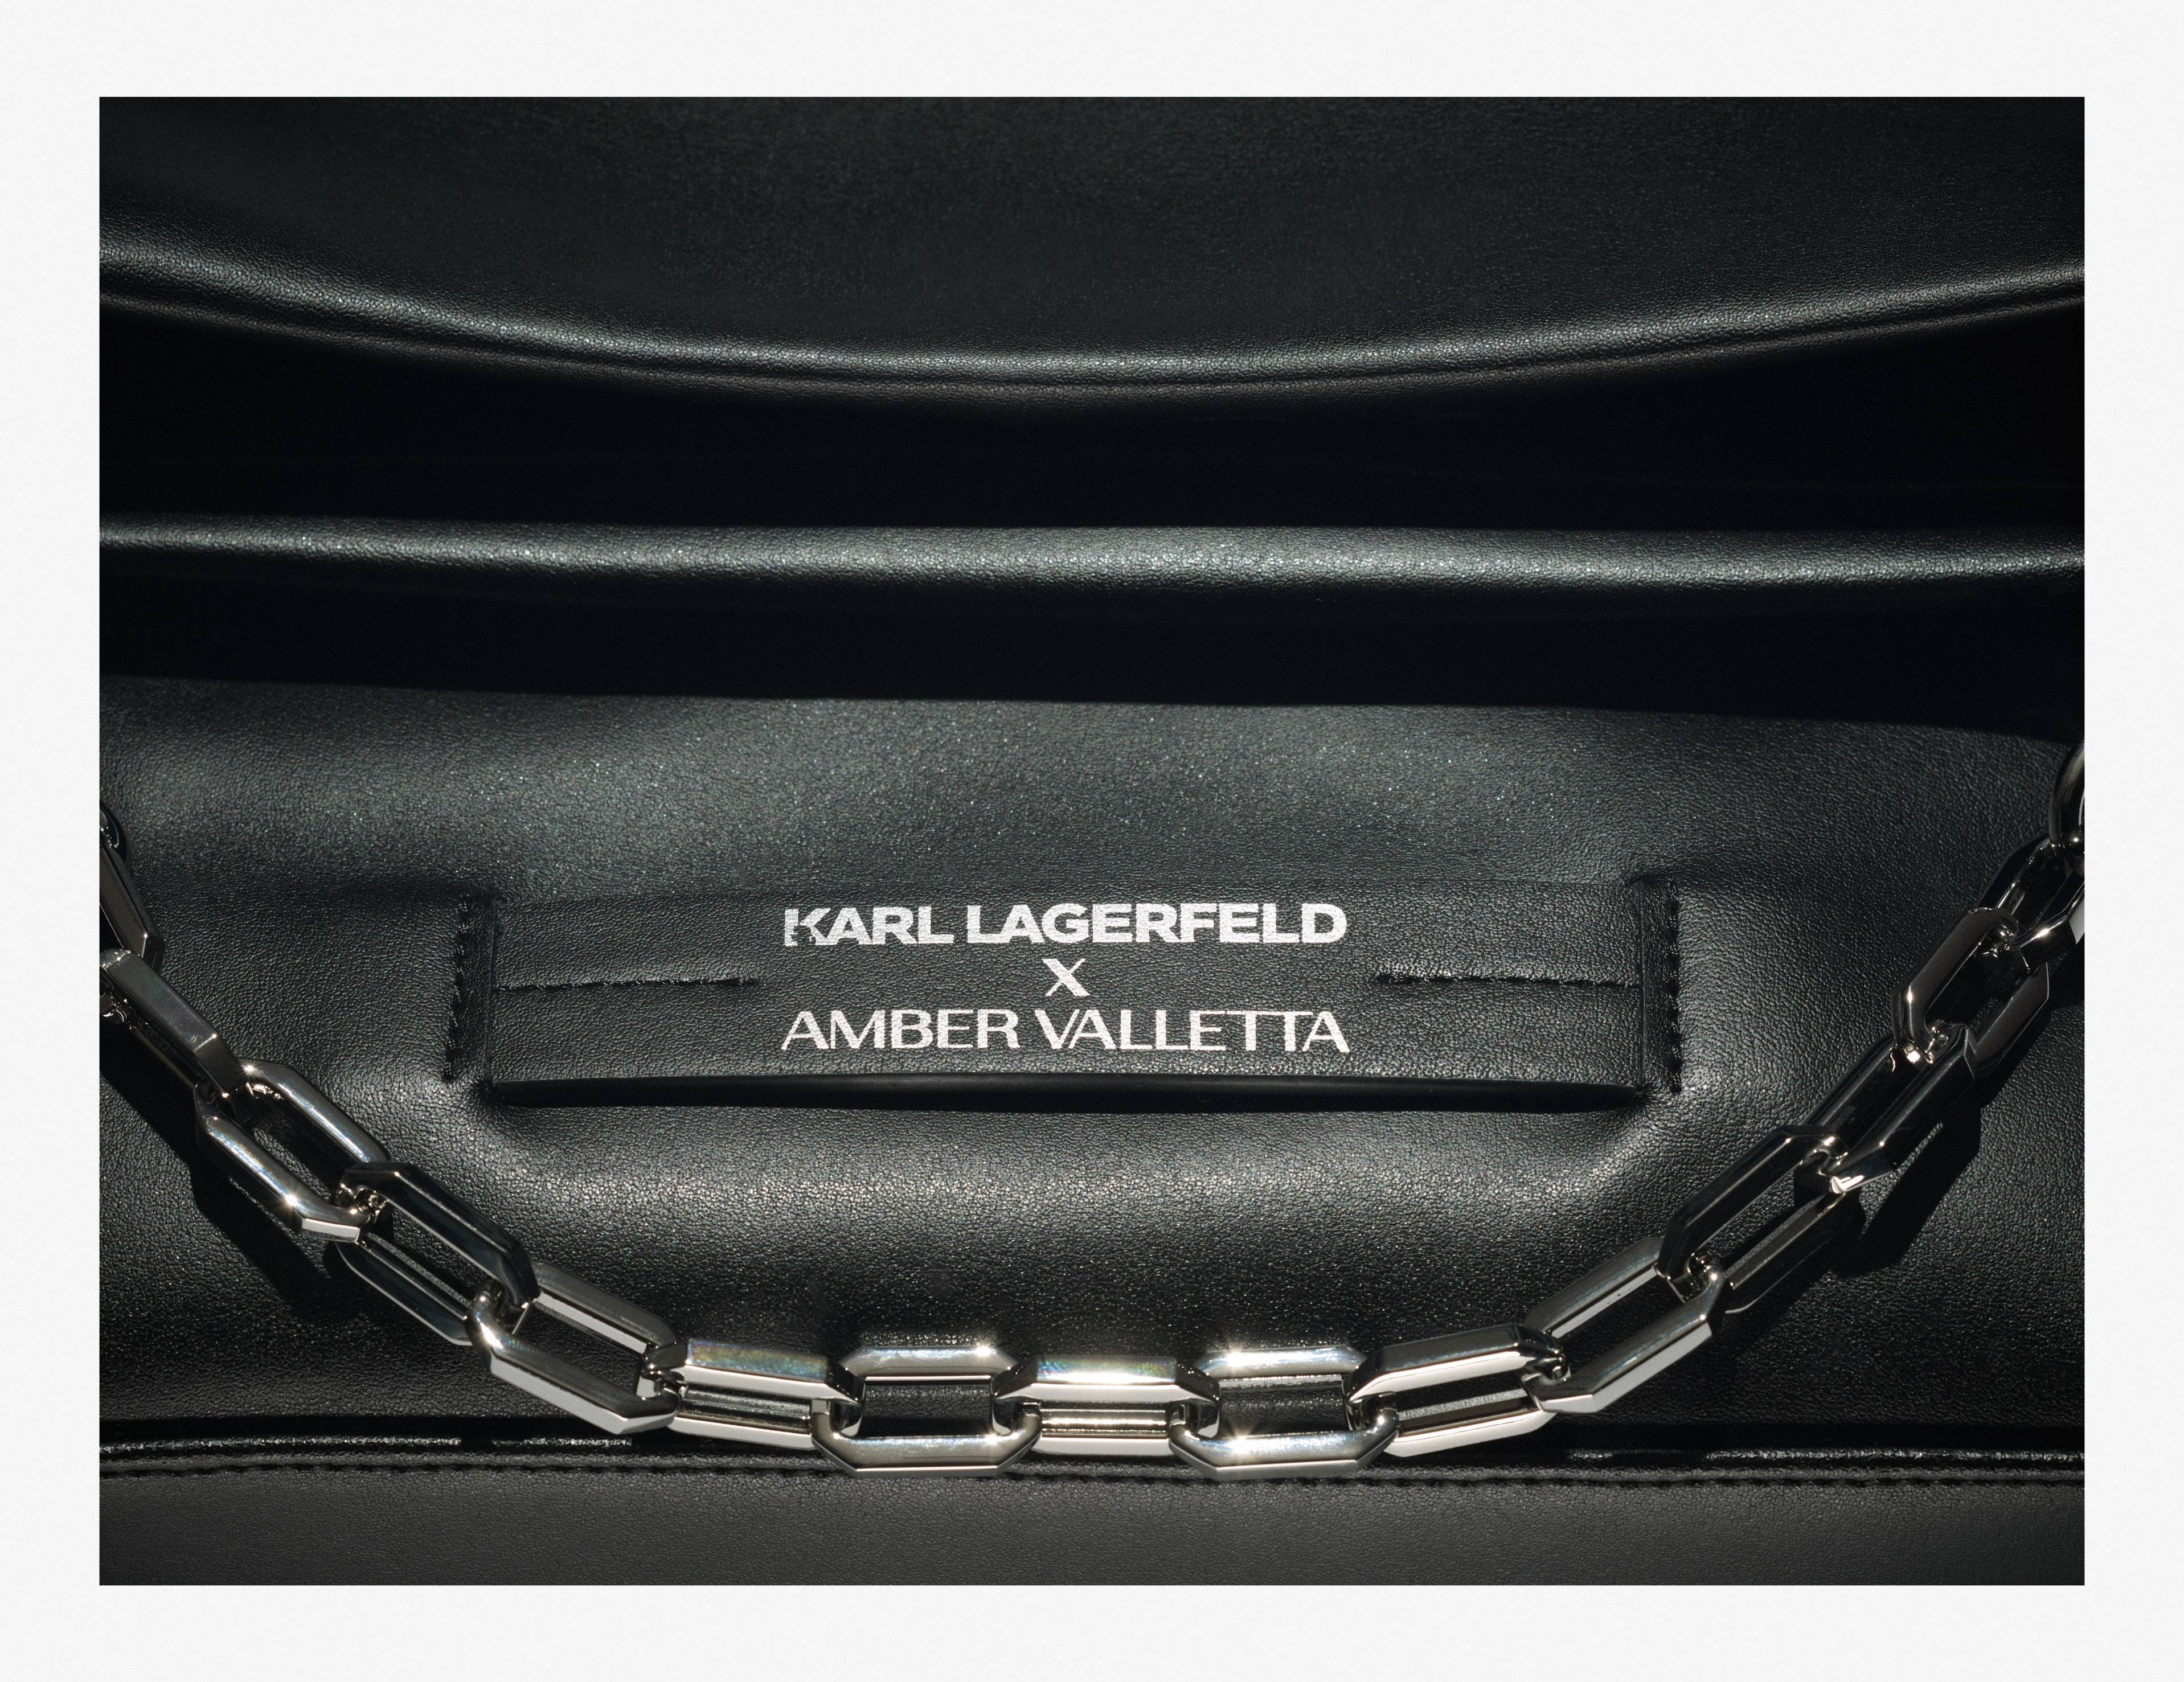 Karl Lagerfeld x Amber Valletta : une collection de sacs écoresponsables